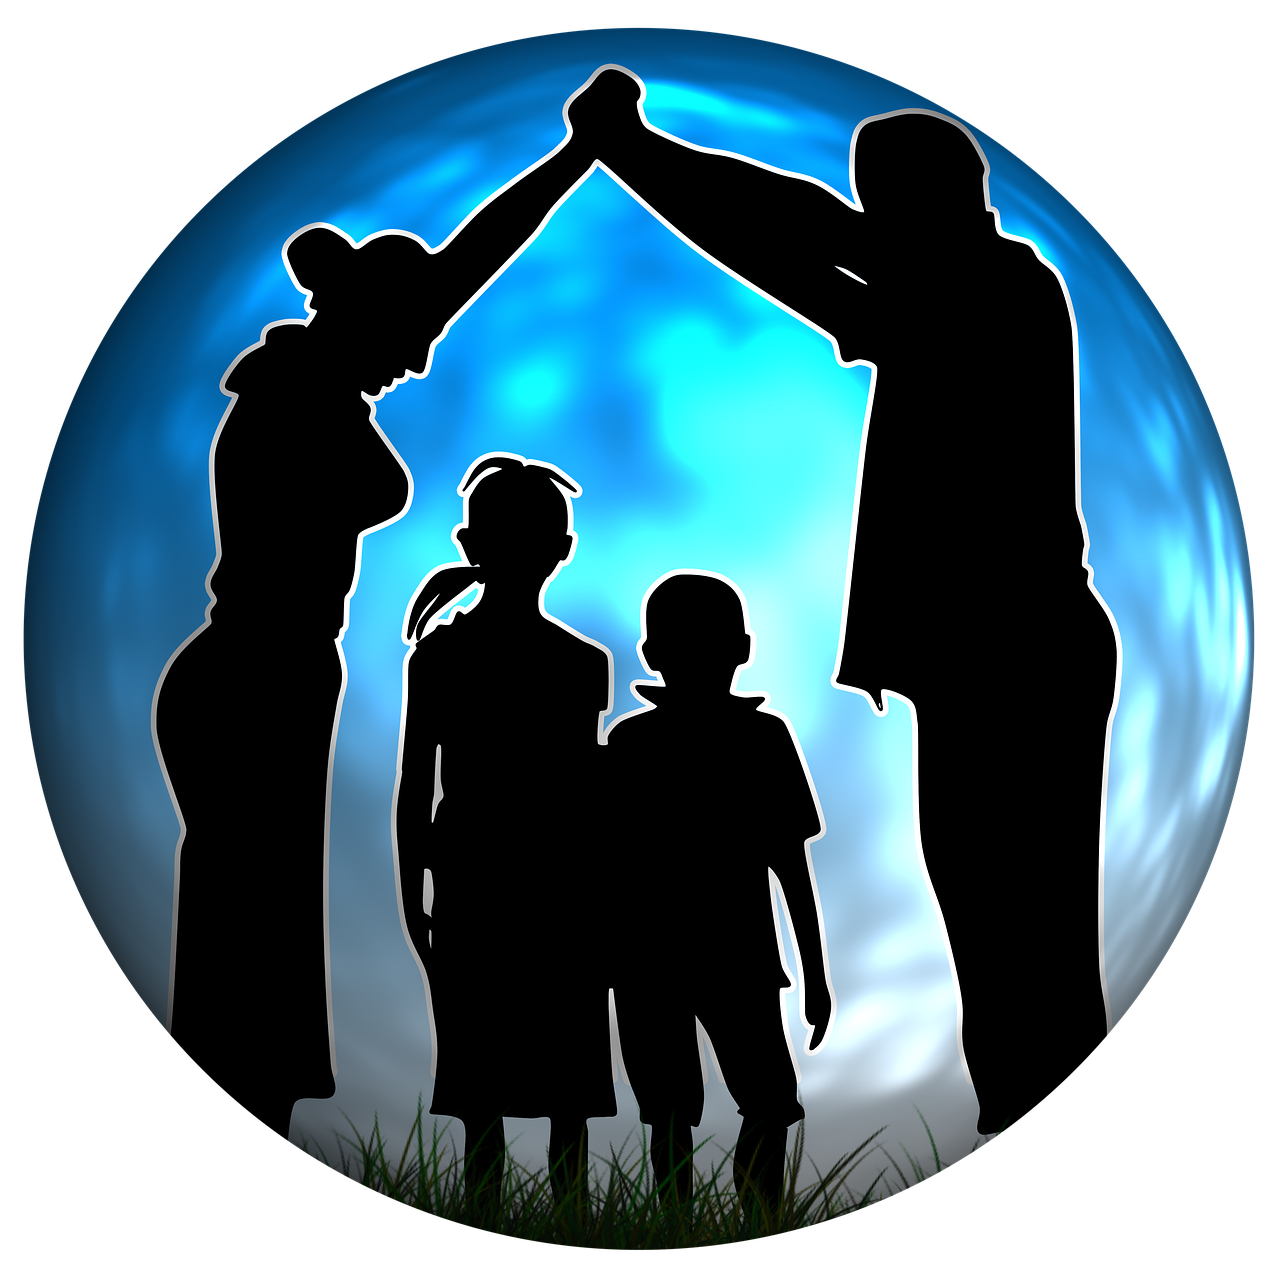 Šeima, Vaikai, Tėvas, Motina, Apsauga, Saugumas, Rūpestis, Globa, Socialinis, Prieigos Teisės